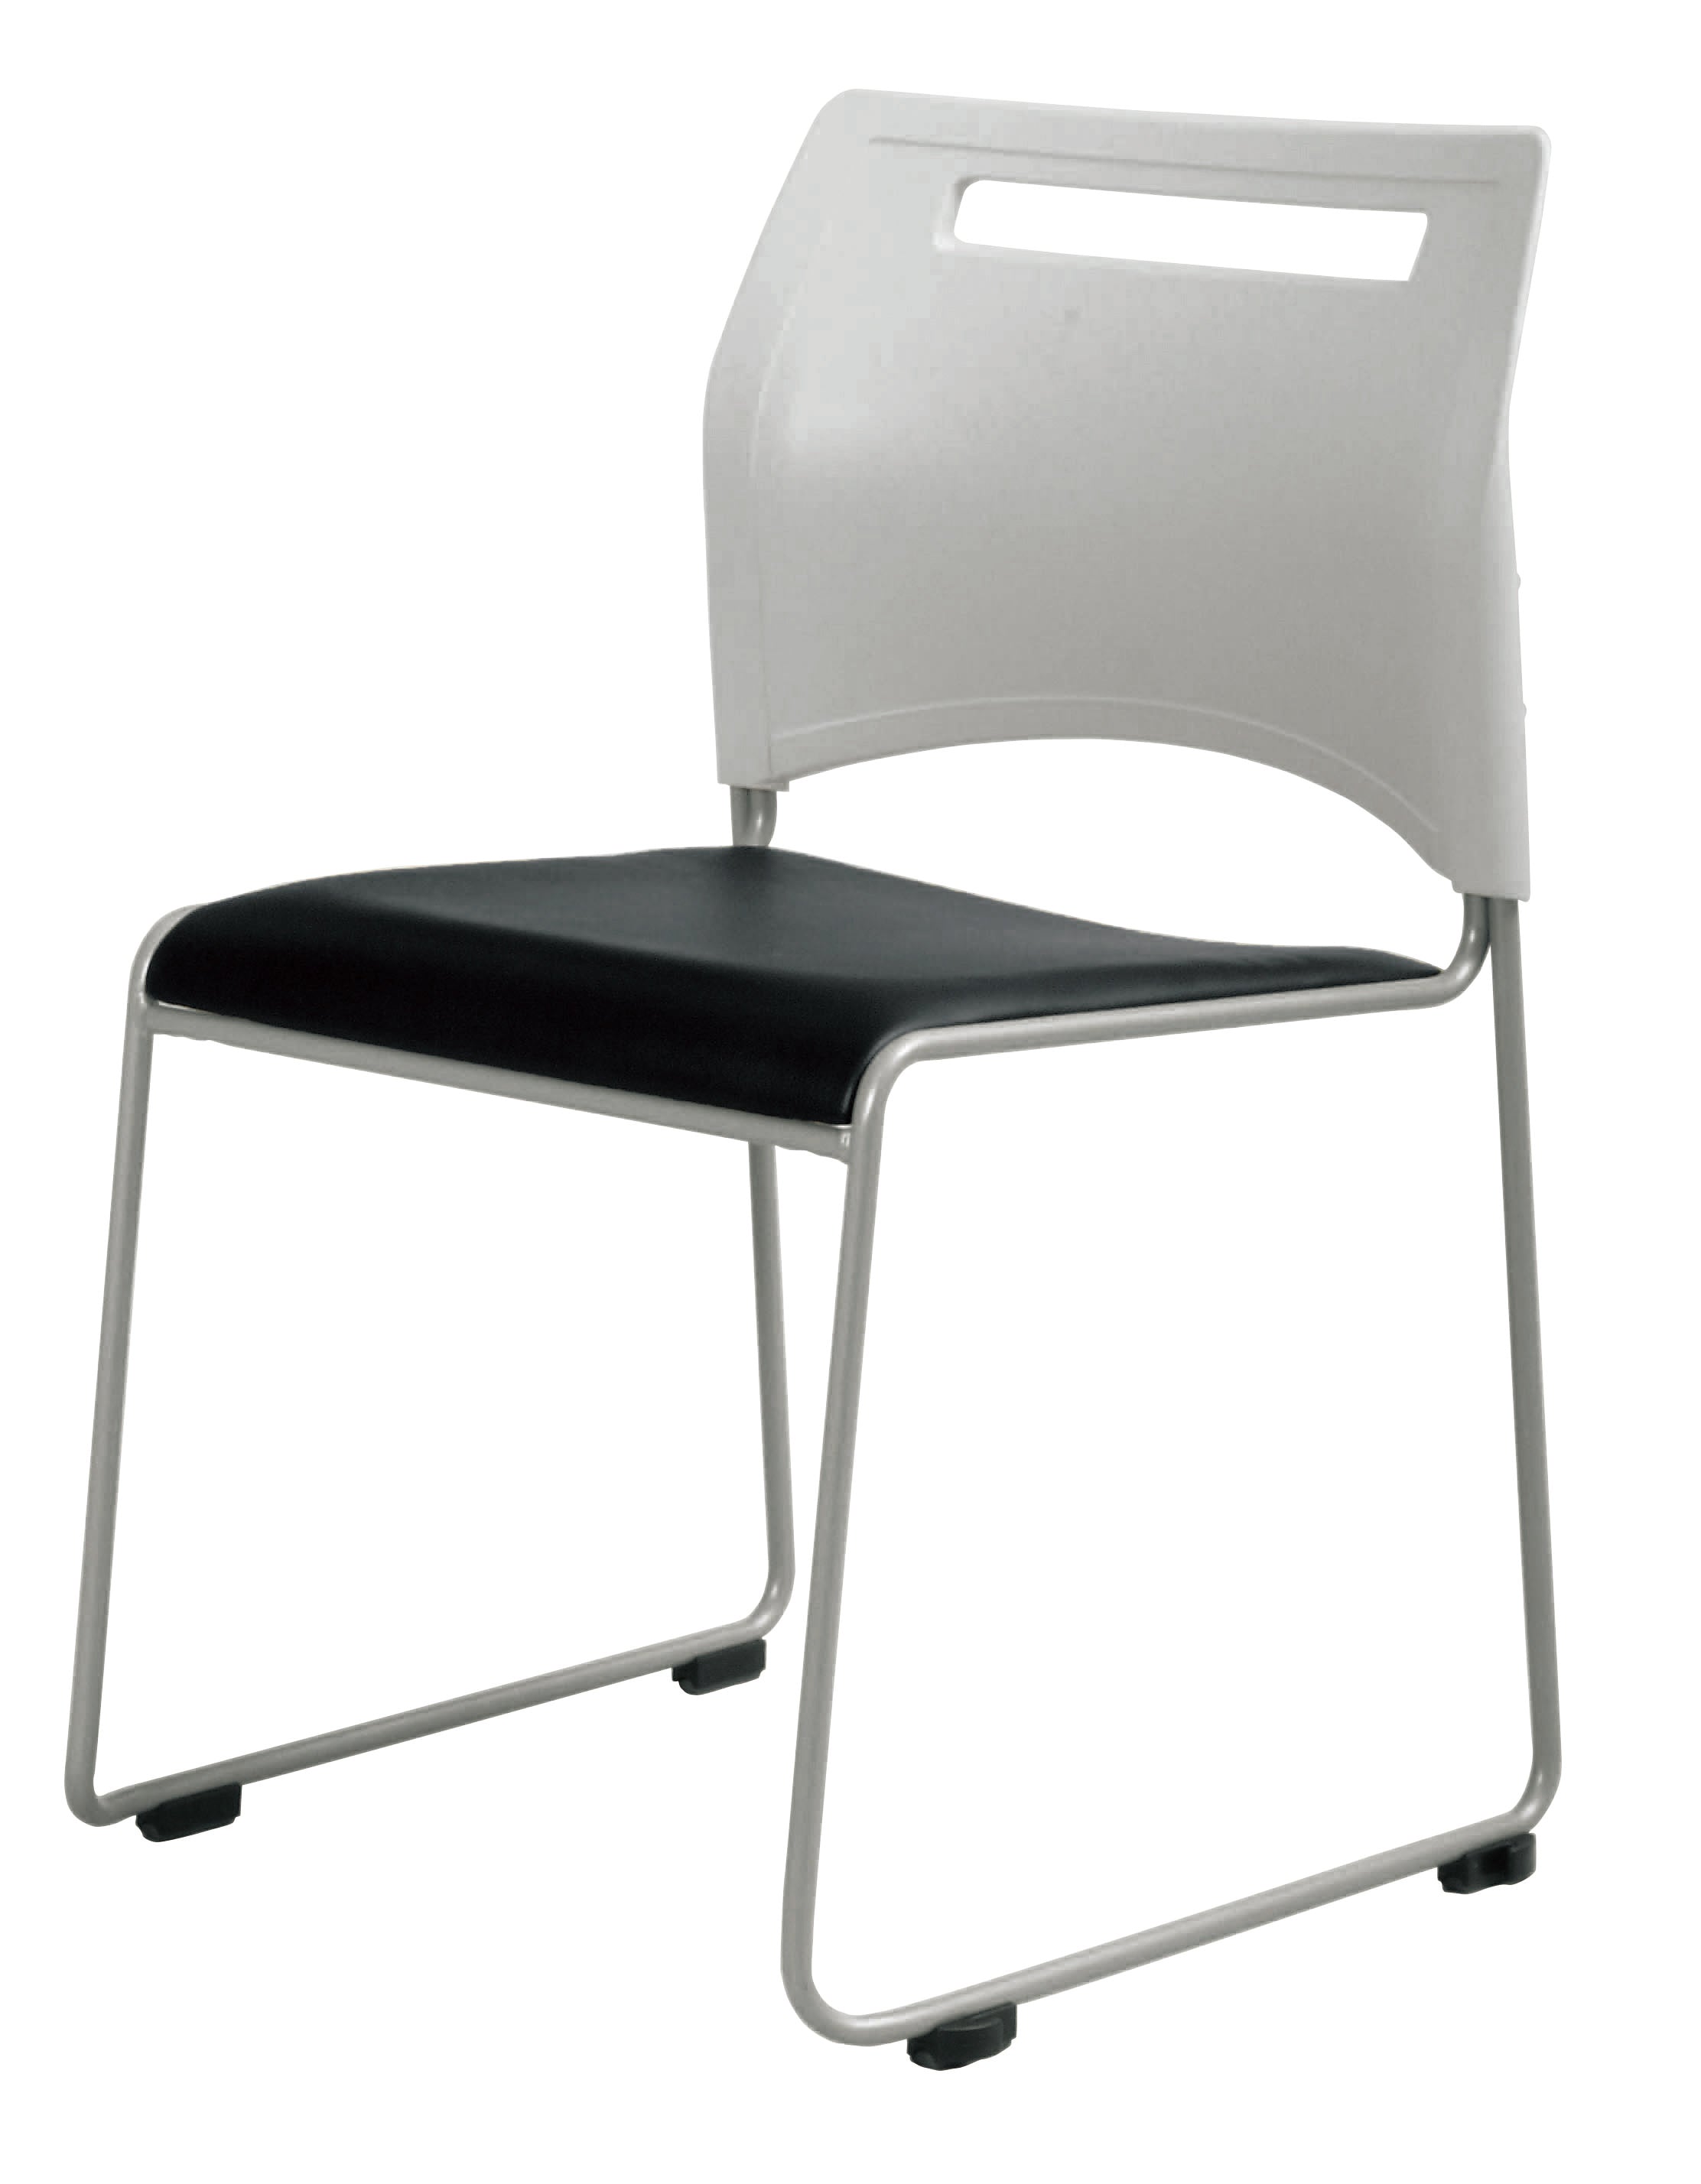 国産定番送料無料 連結可能 スタッキングチェア 4脚セット ホワイト ミーティングチェア パイプ椅子 会議イス 会議椅子 パイプチェア 横連結可能 パイプイス